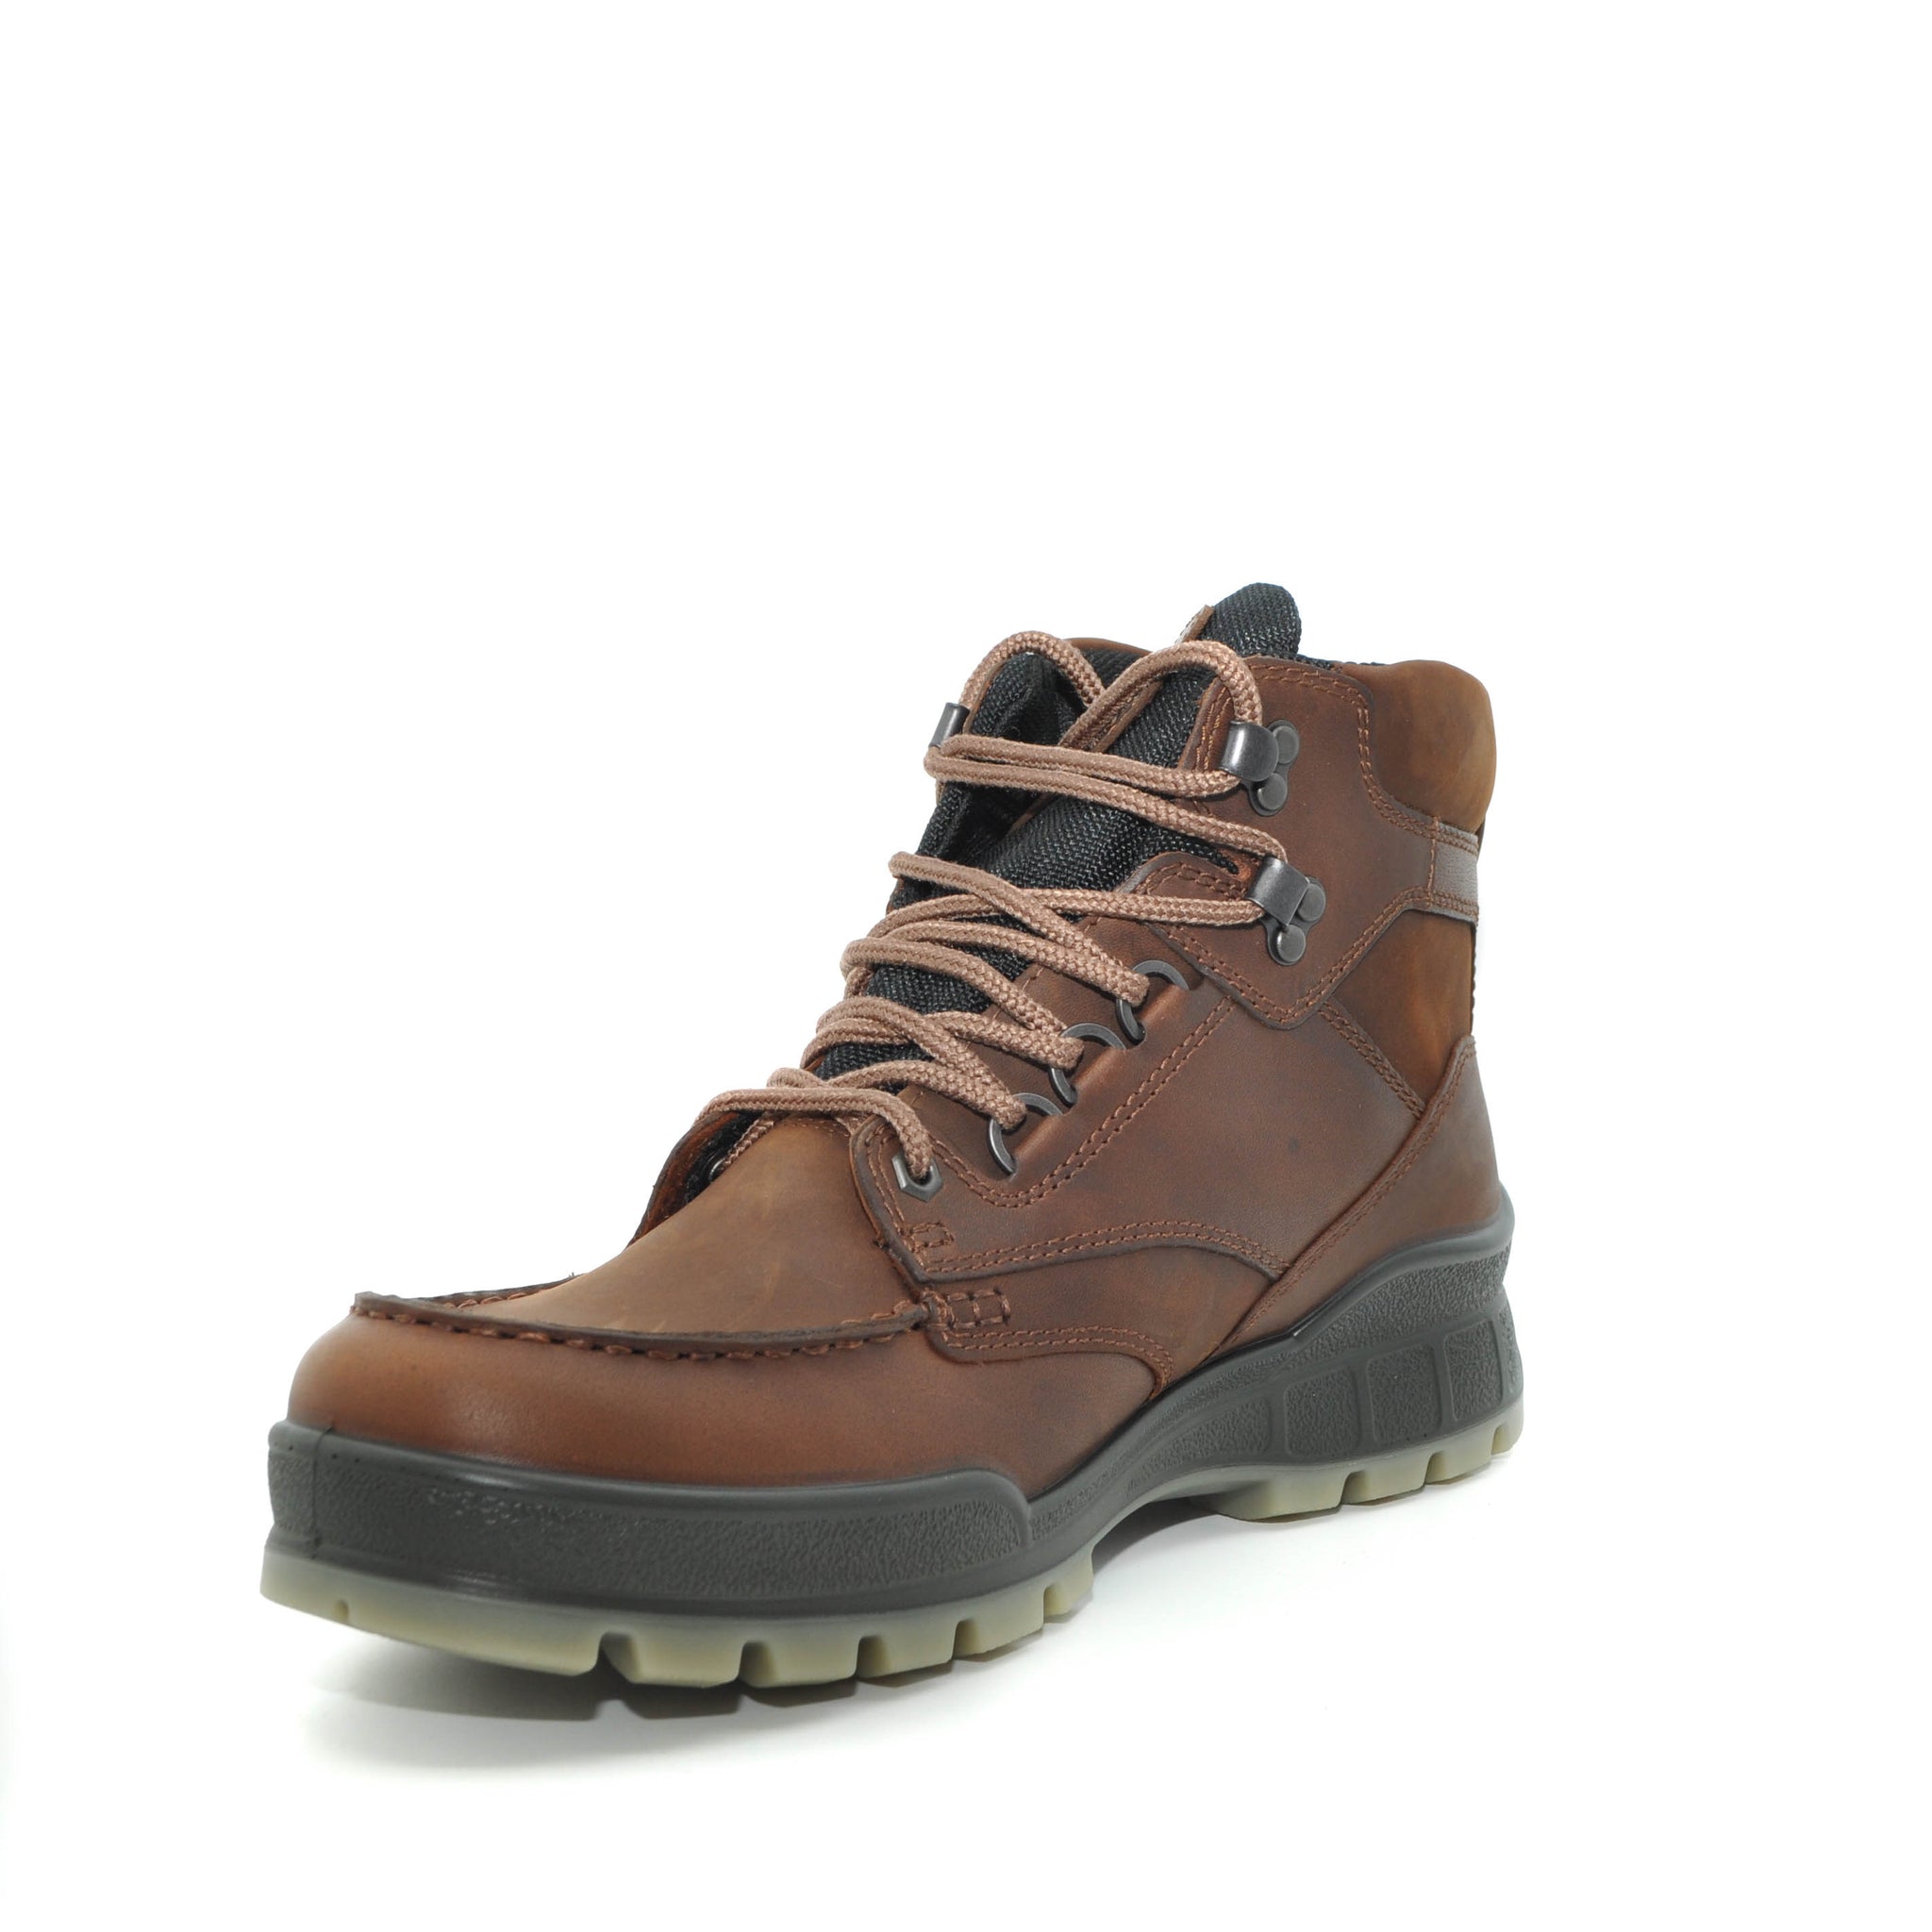 ECCO mens boots online ireland | hiking boots | mens